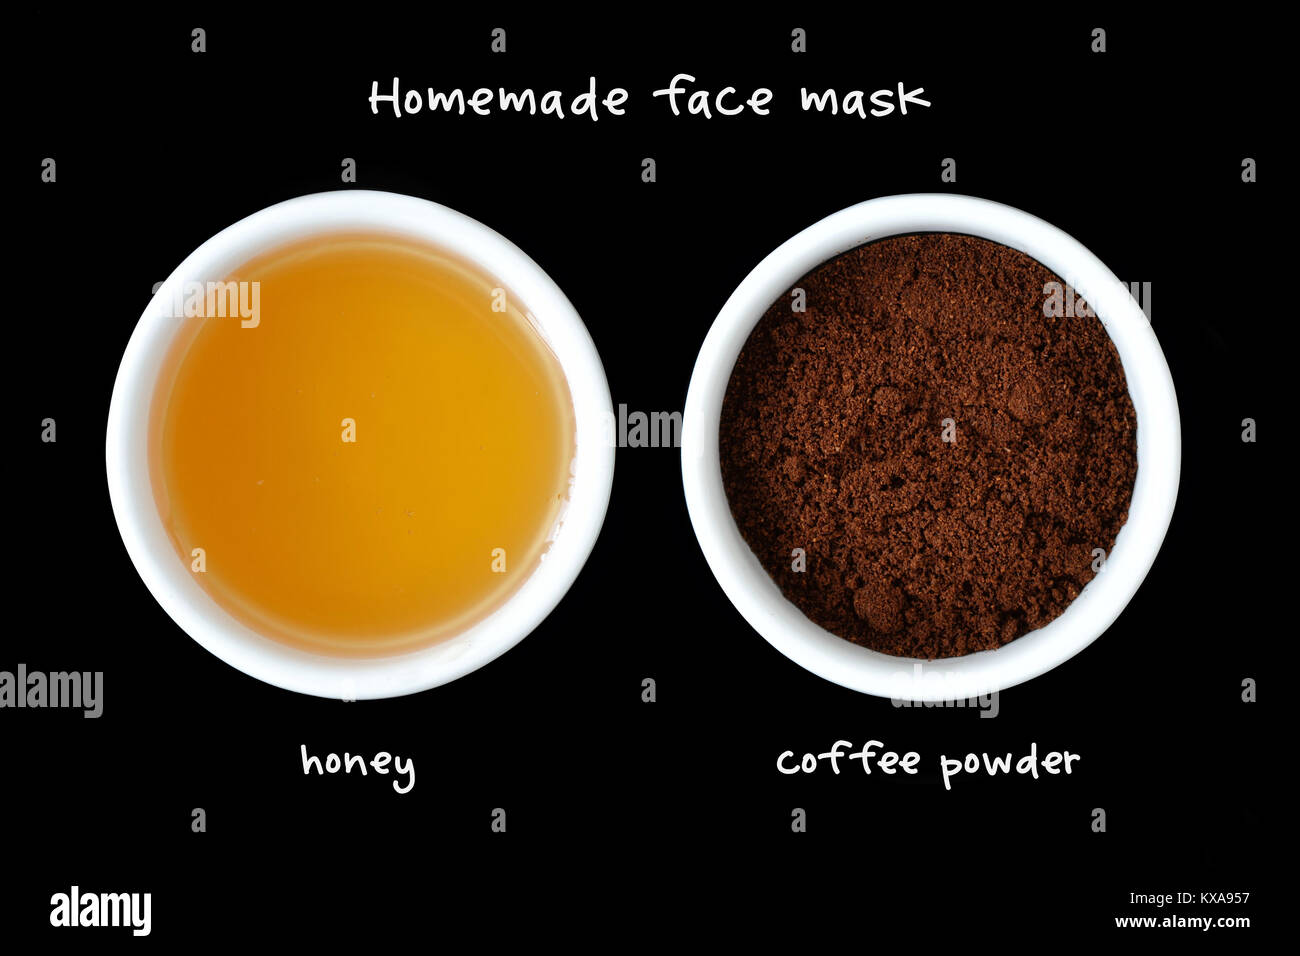 Masque visage fait maison composé de miel et de la poudre de café - Fond  noir Photo Stock - Alamy